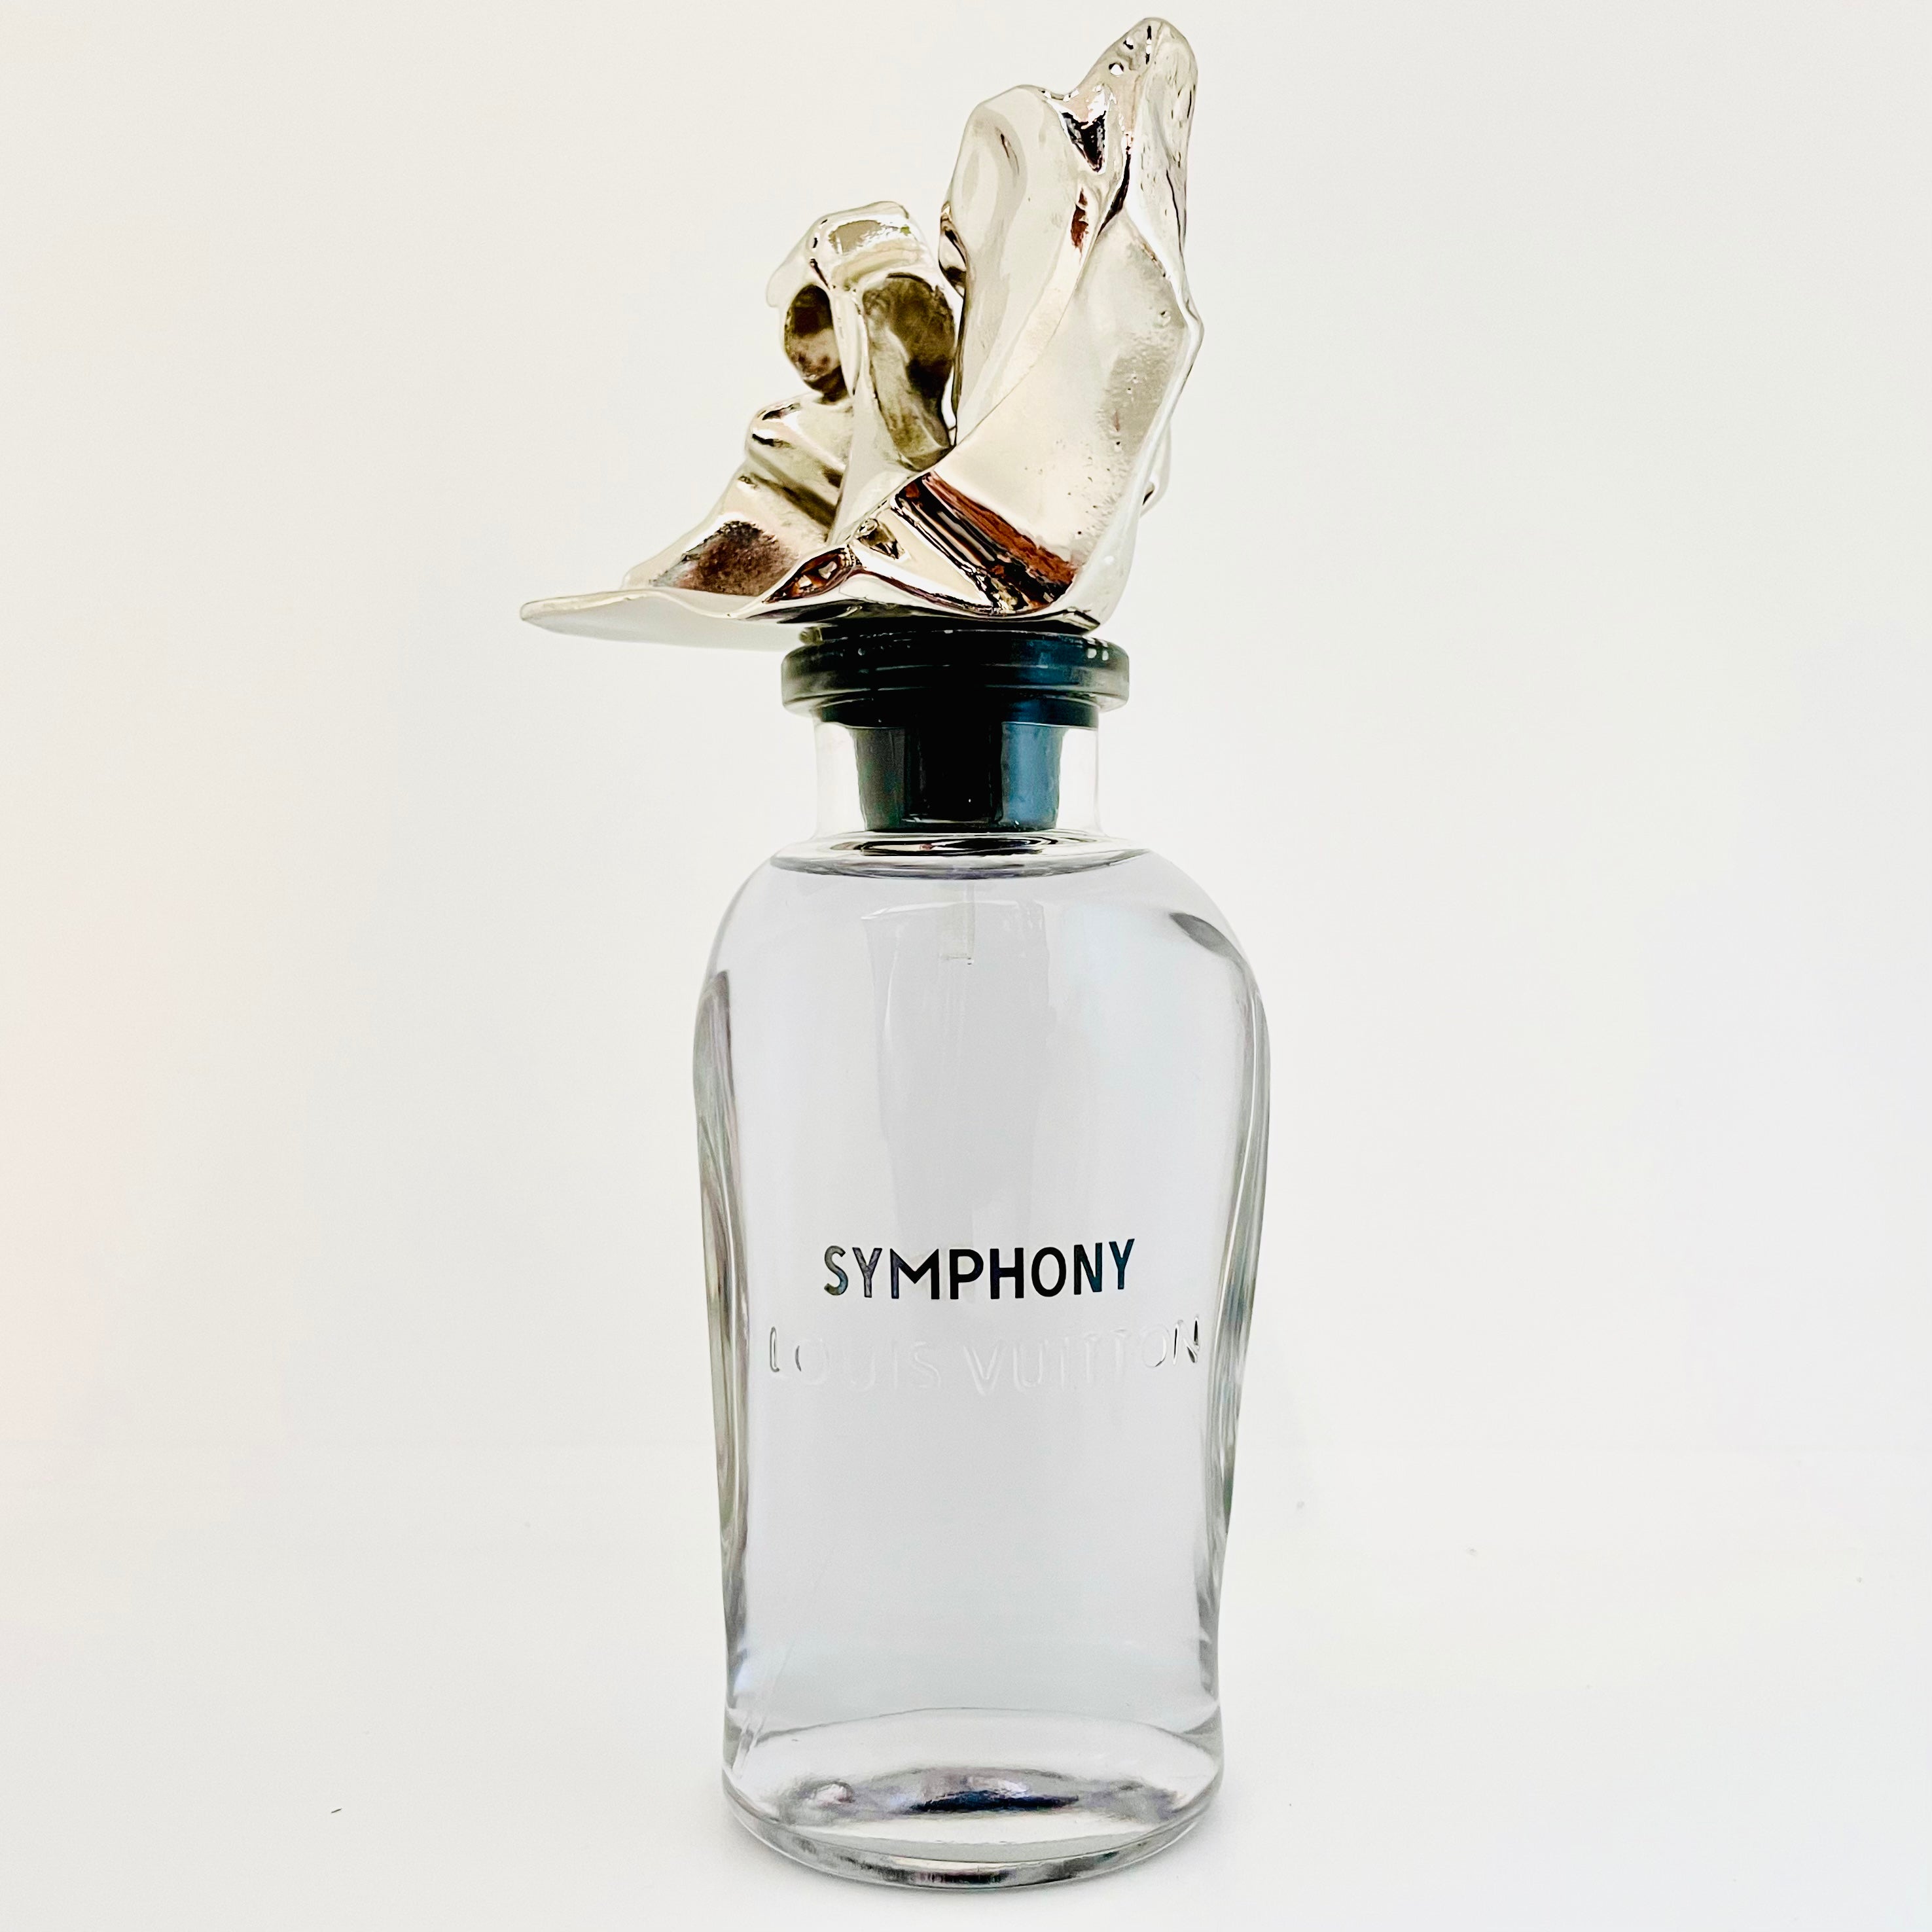 SYMPHONY】シンフォニー VUITTON 香水 100ml ルイヴィトン - 香水